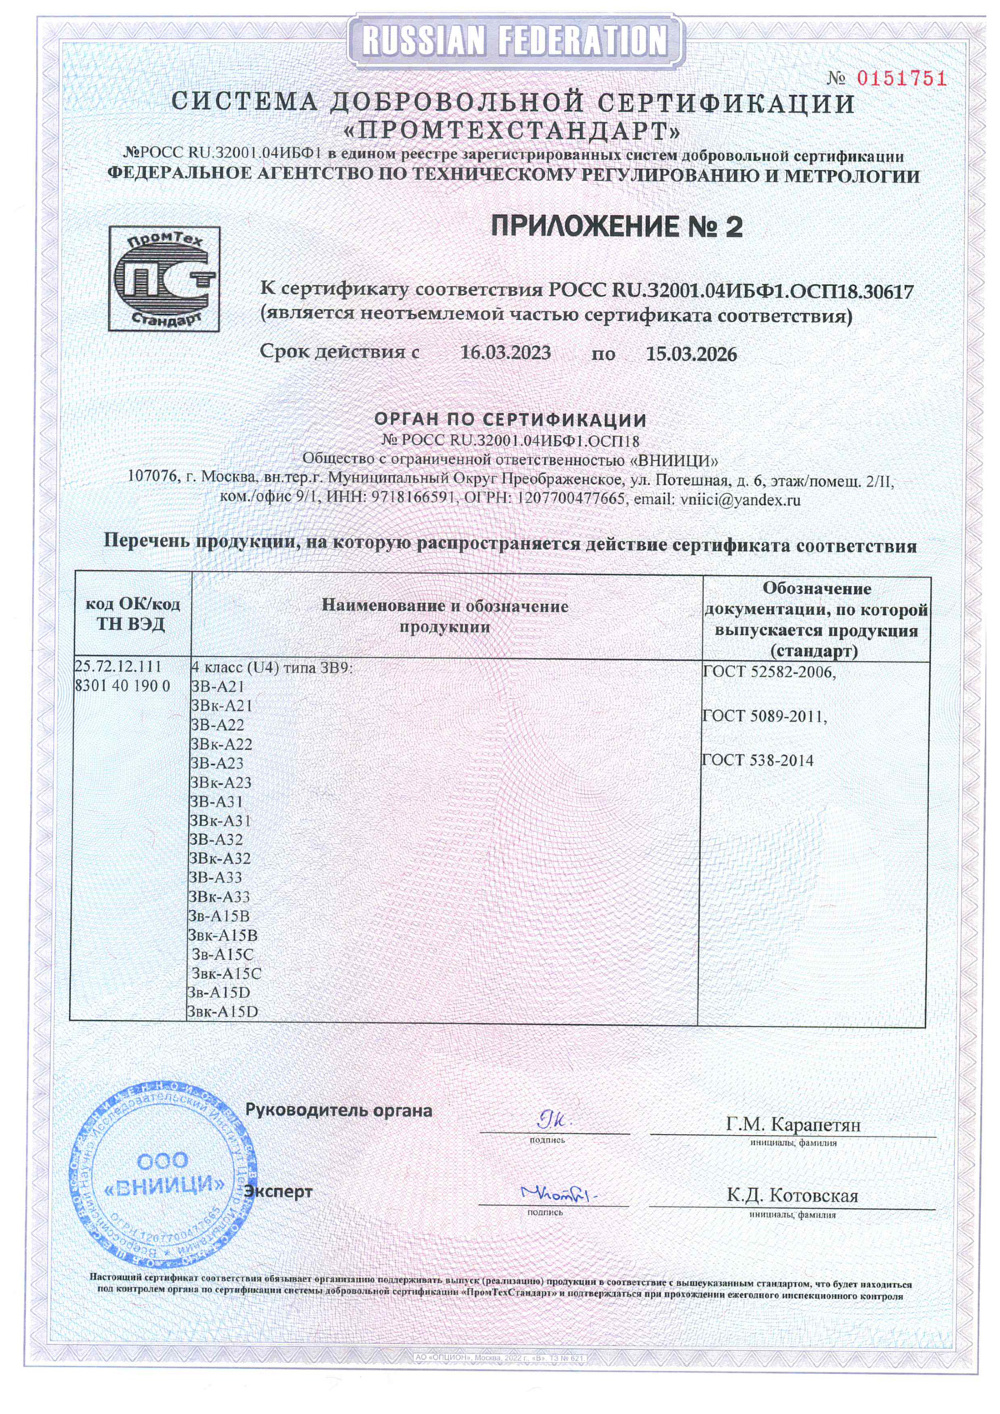 сертификат соответствия для замка А30 стр3